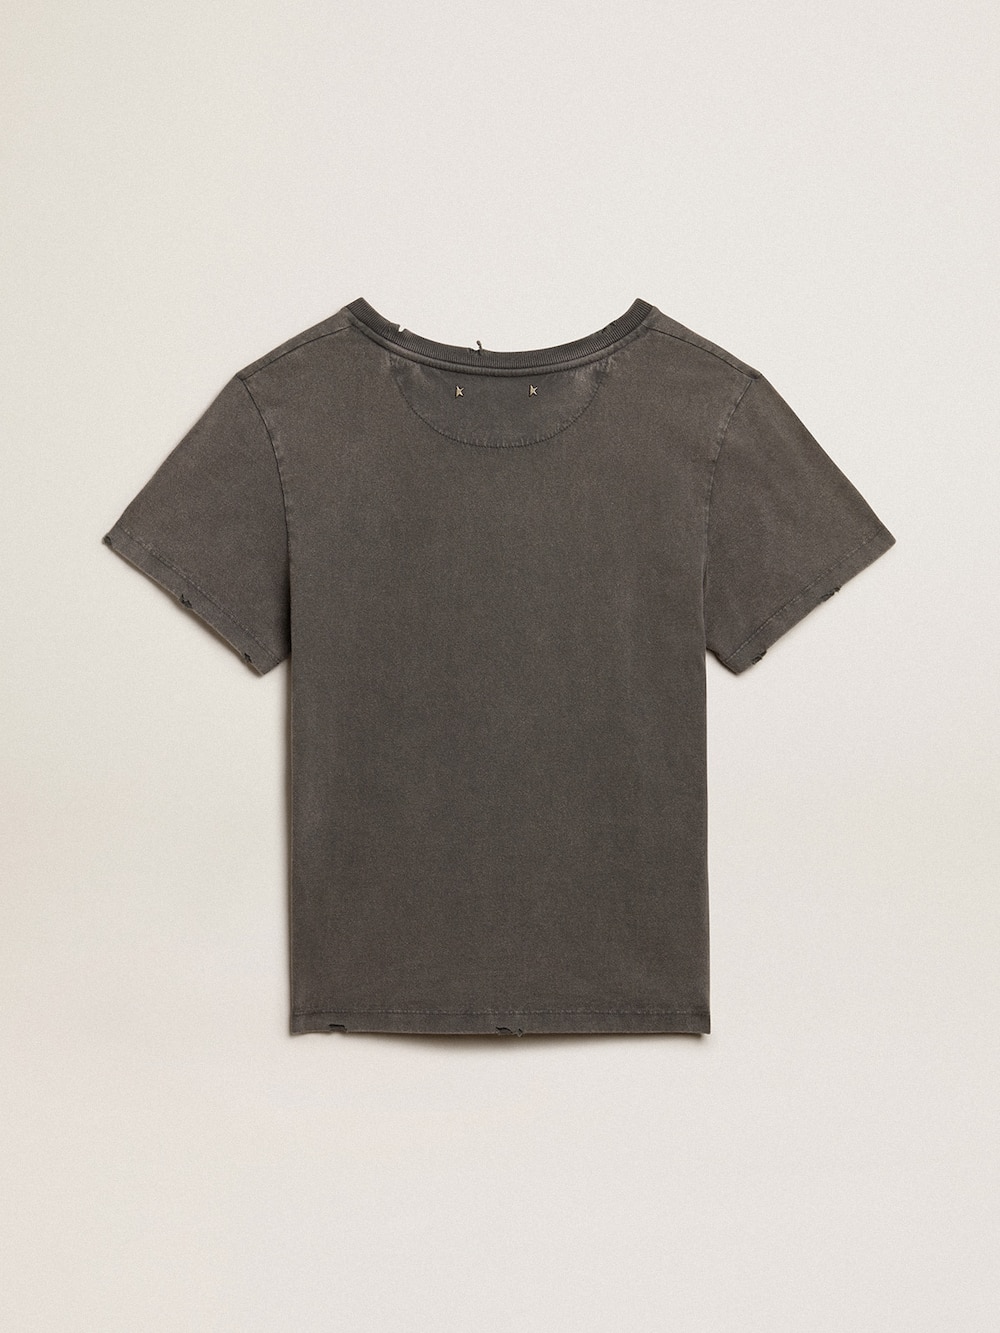 Golden Goose - T-shirt dal fit slim di colore grigio antracite dal trattamento distressed in 